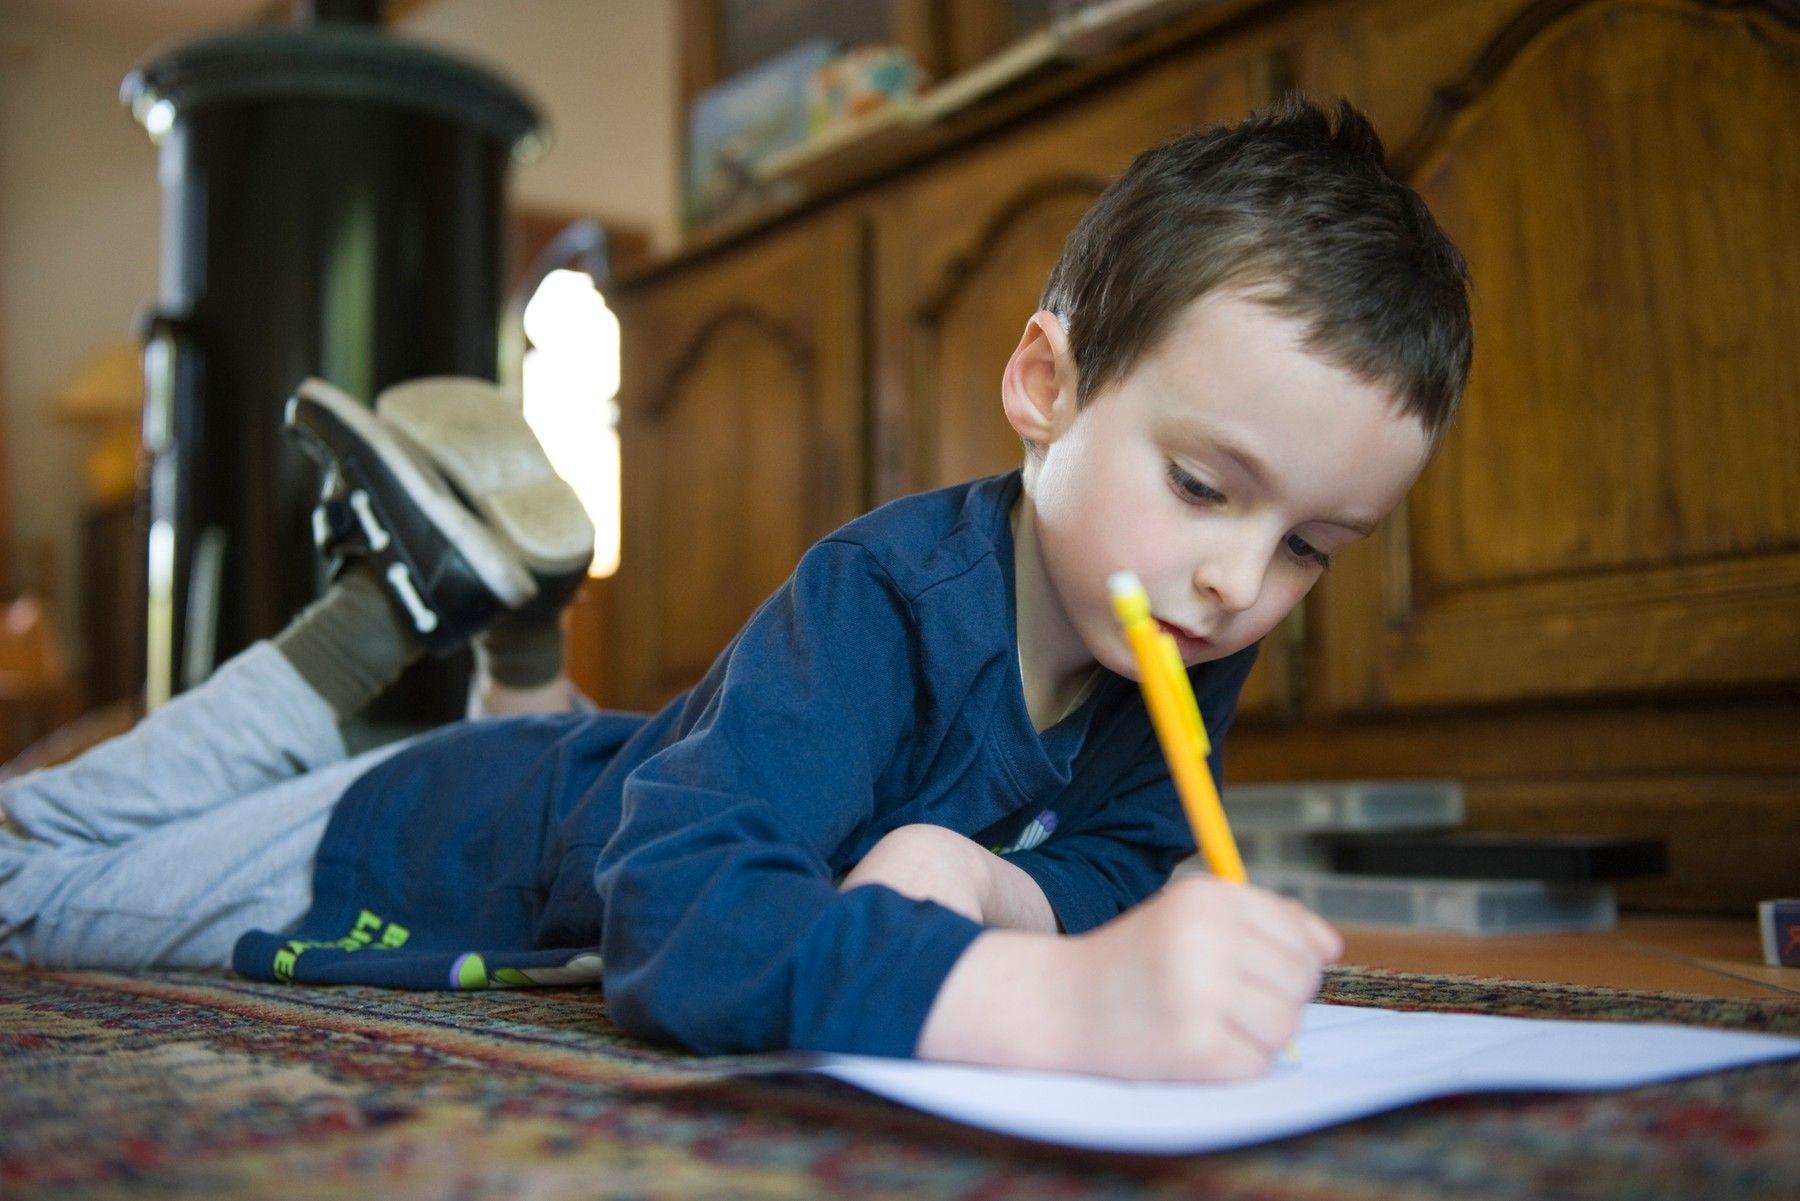 Koľko píšu vaše deti reálne na papier? Tušíte, o čo vo vývoji prichádzajú,  ak tak píšu málo? | Najmama.sk